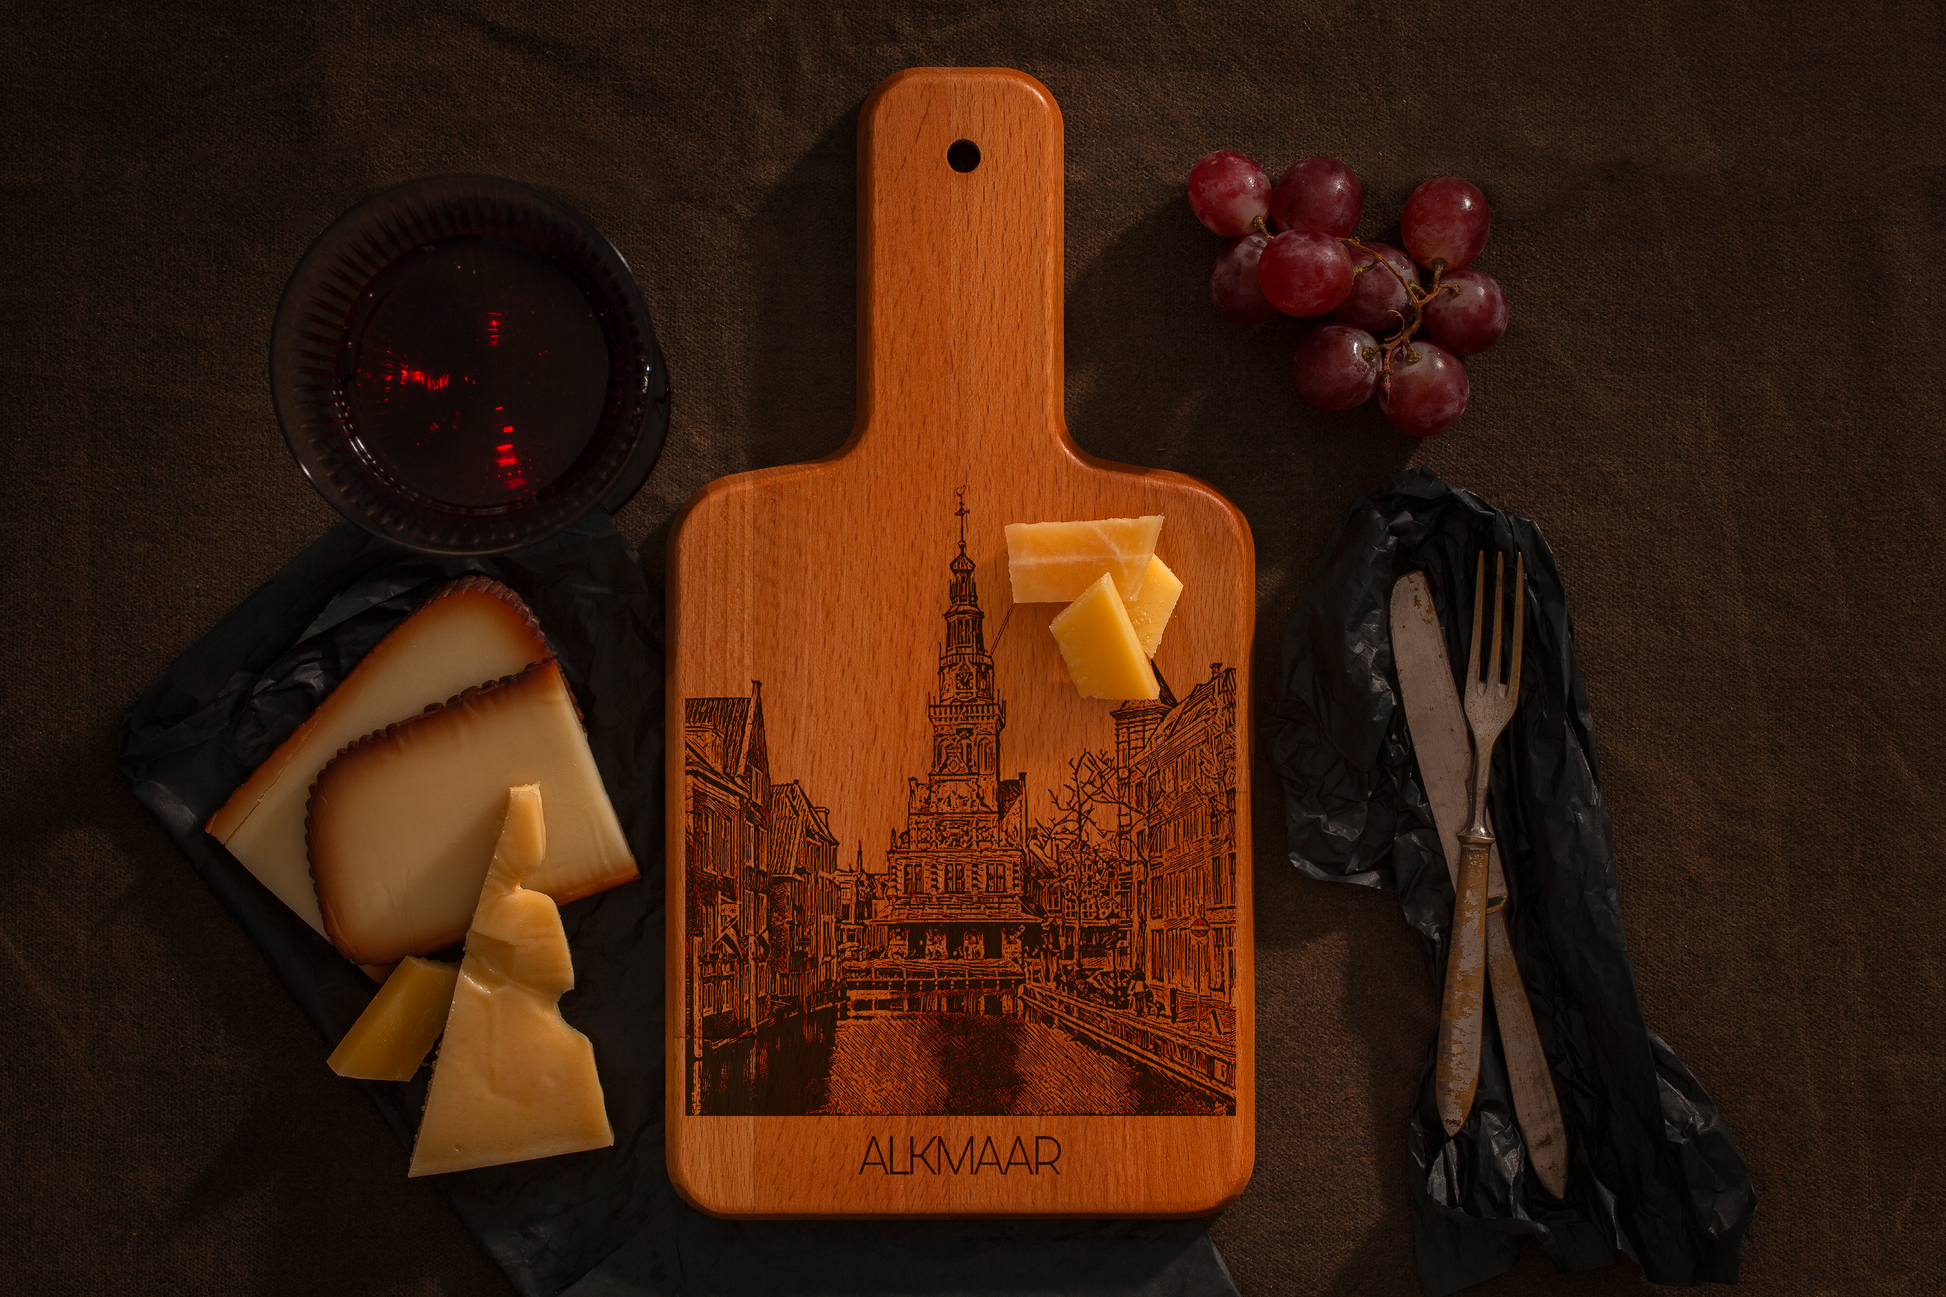 Alkmaar, De Waag, cheese board, with cheese